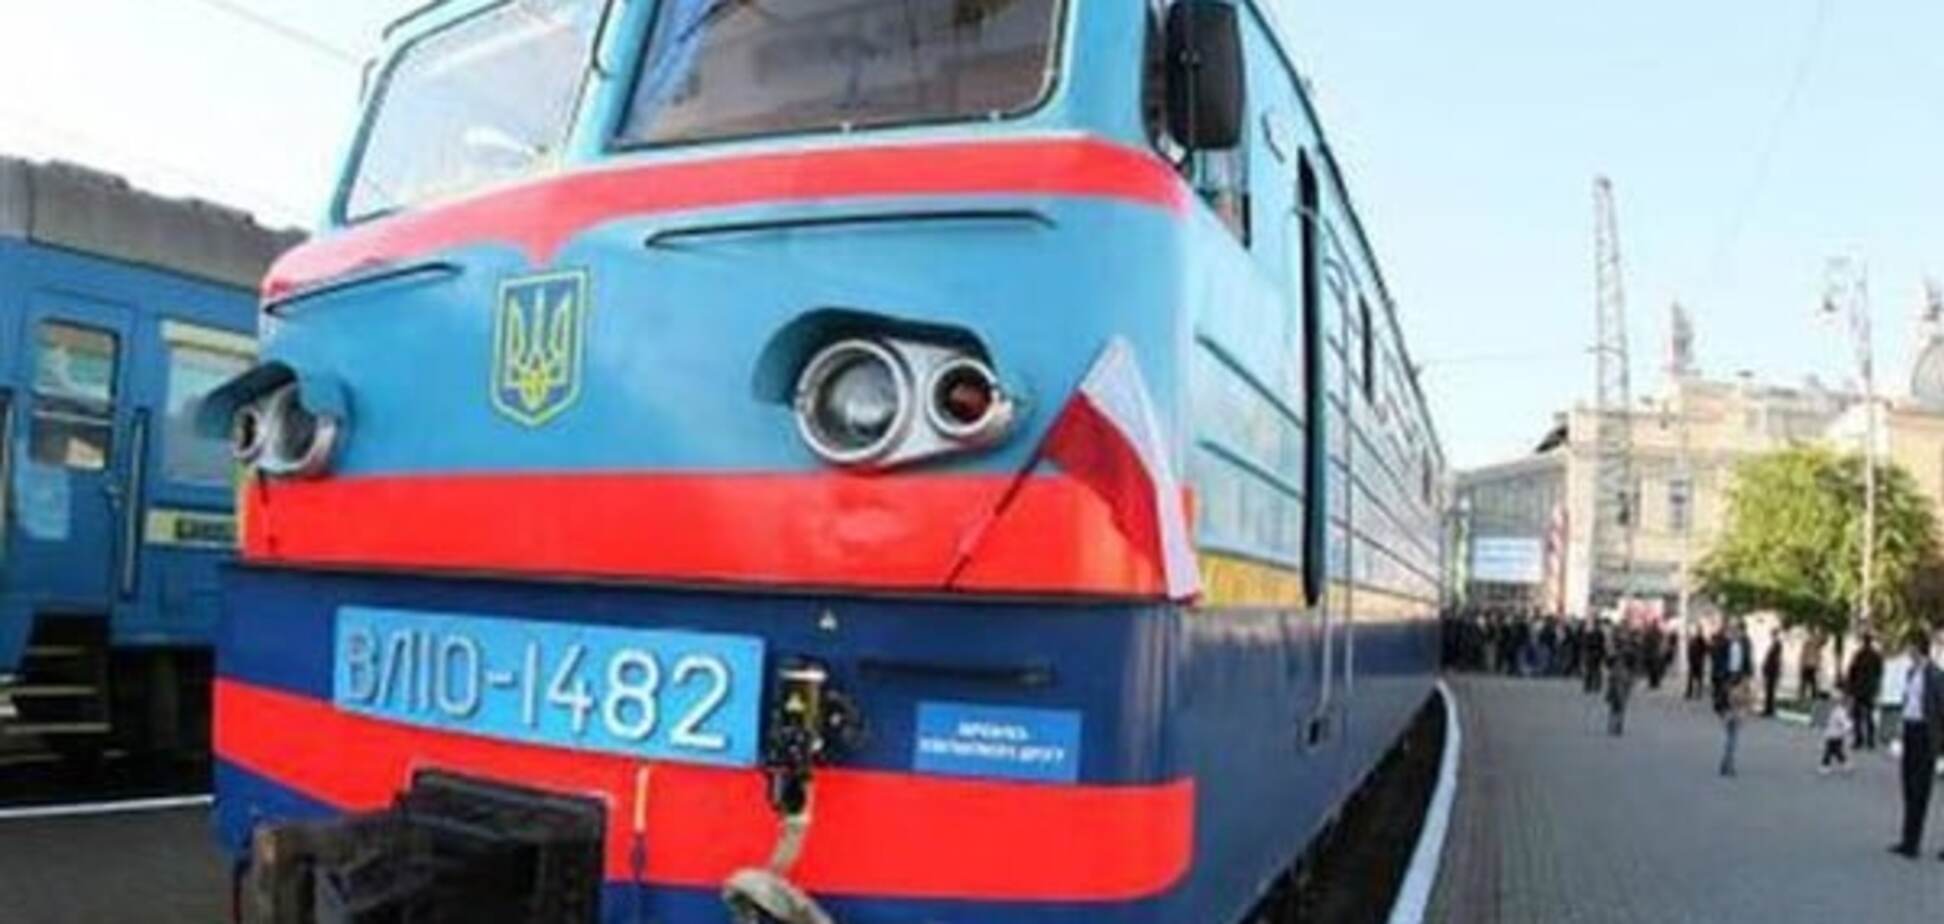 Начальник поезда Киев-Ковель лишился премии из-за любви к 'русскому миру': фотофакт